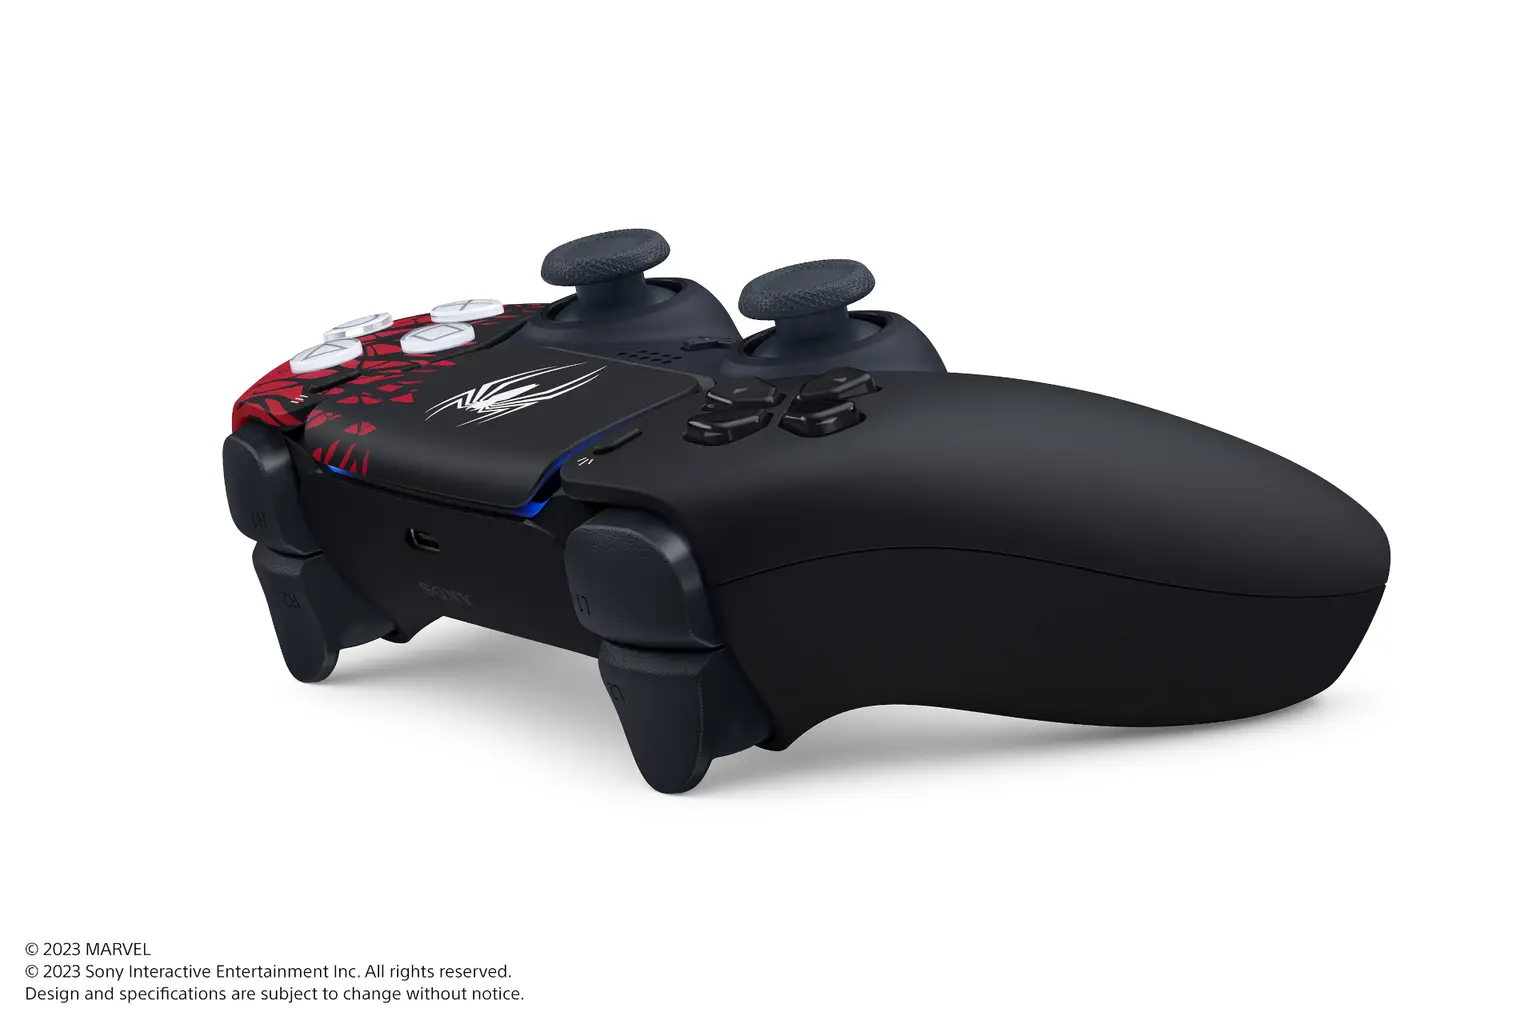 Les écouteurs PlayStation seront bientôt lancés avec annulation du bruit et  adaptateur USB obligatoire -  News